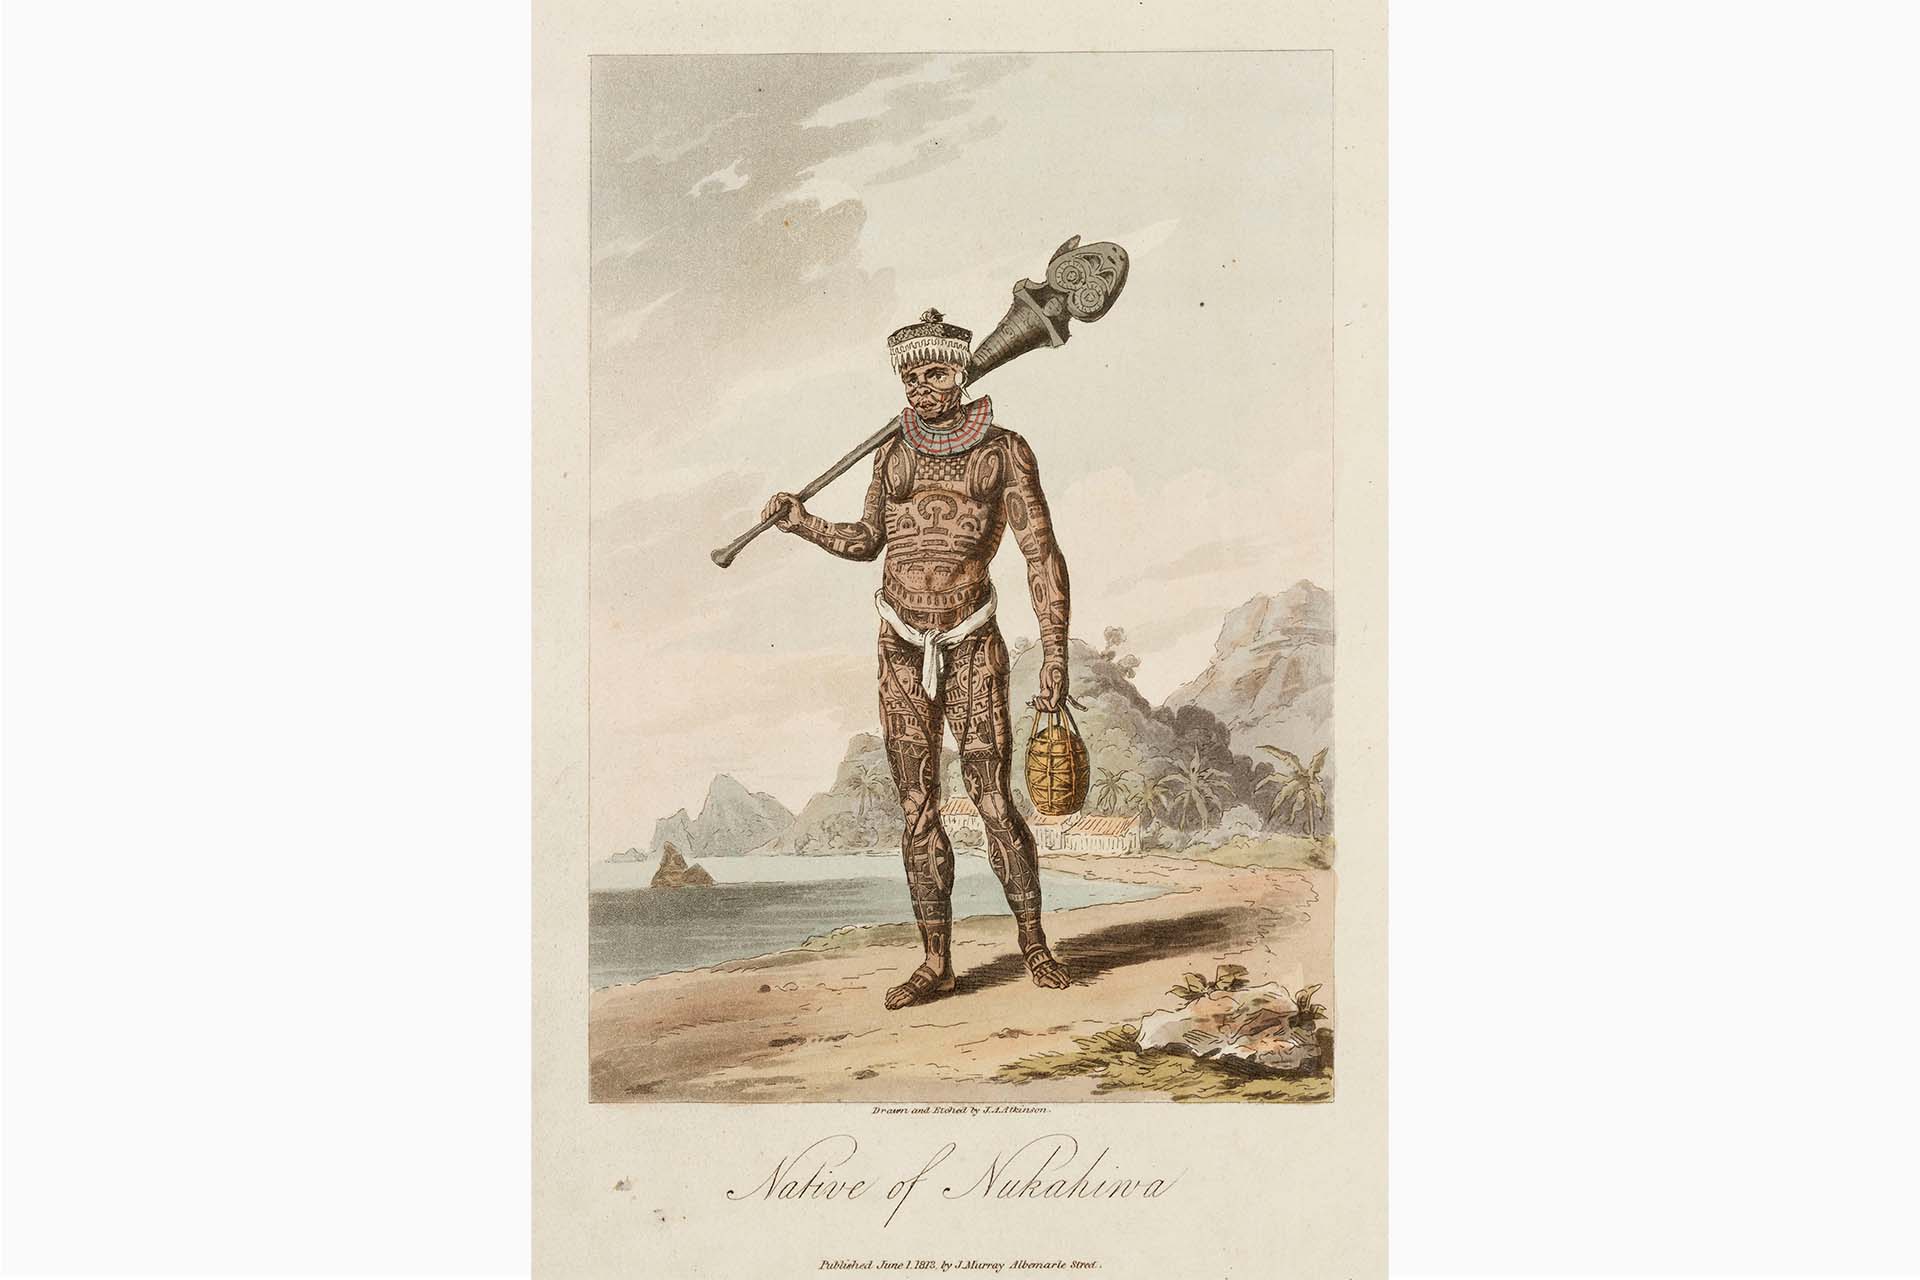 Изображение татуированного полинезийца с острова Нуку-хива